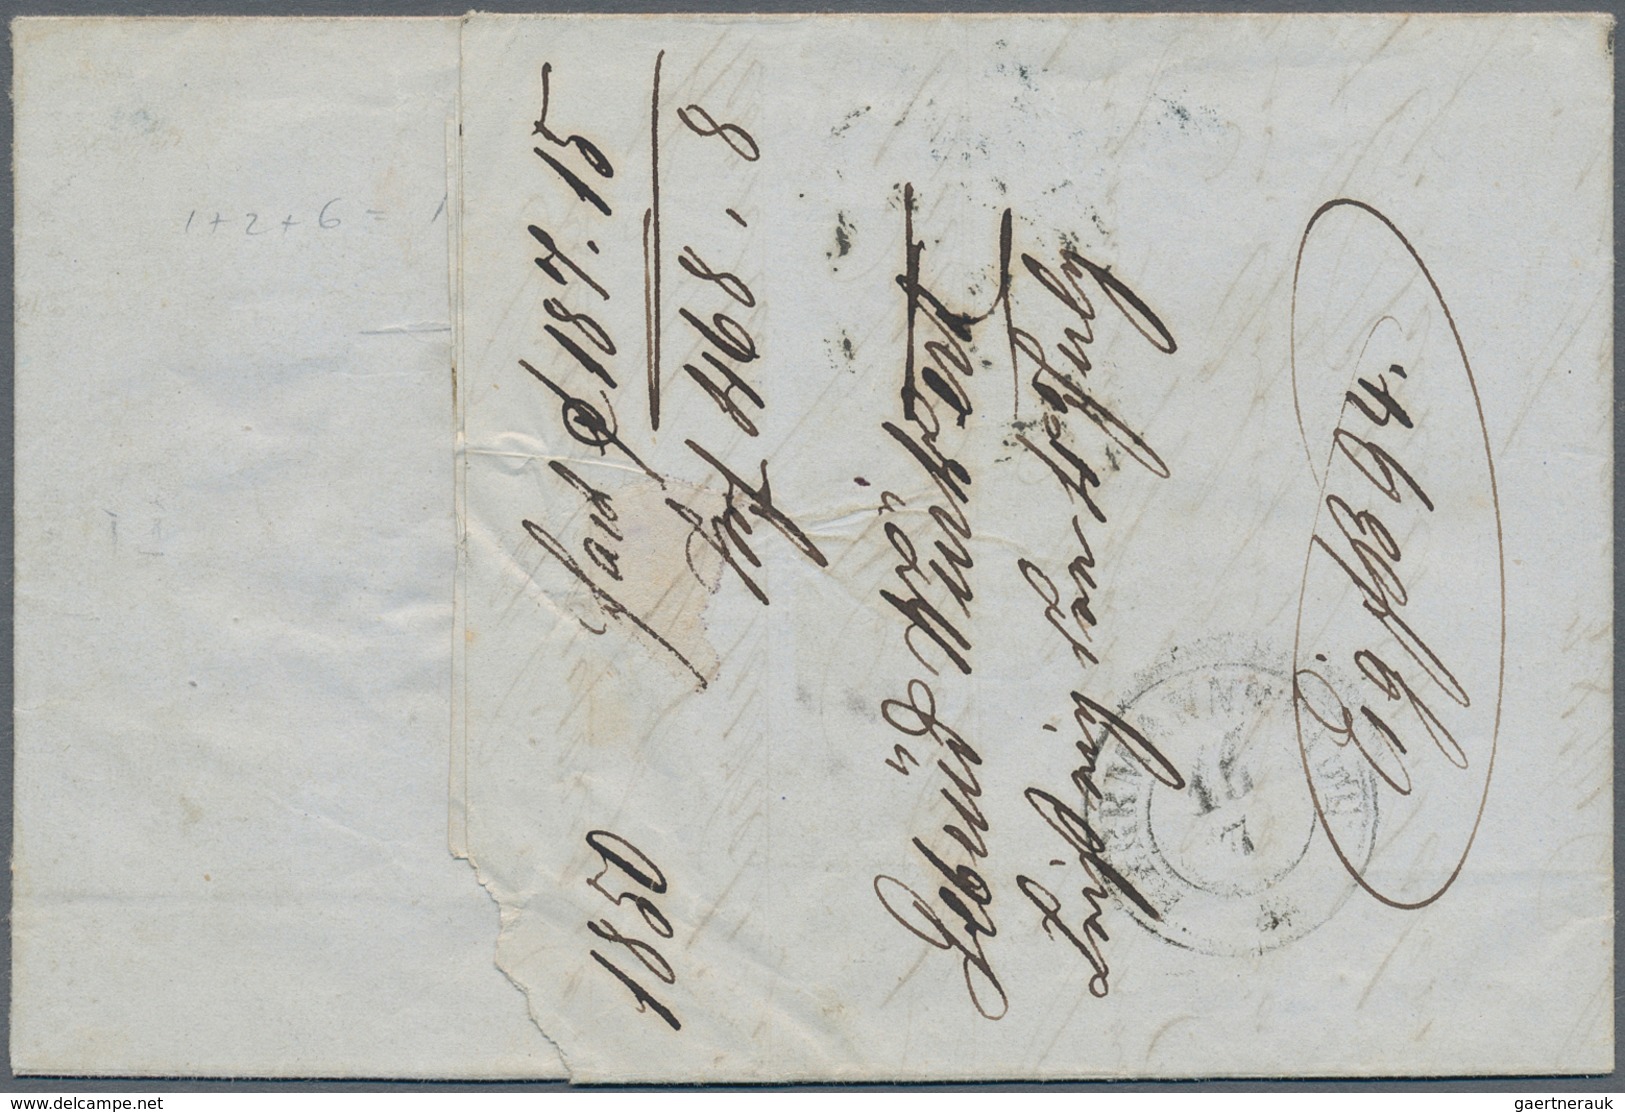 Österreich: 1850, 1 Kr Gelbocker, 2 Kr Grauschwarz Und 6 Kr Braun, Handpapier, Alle Marken Voll- Bis - Gebruikt